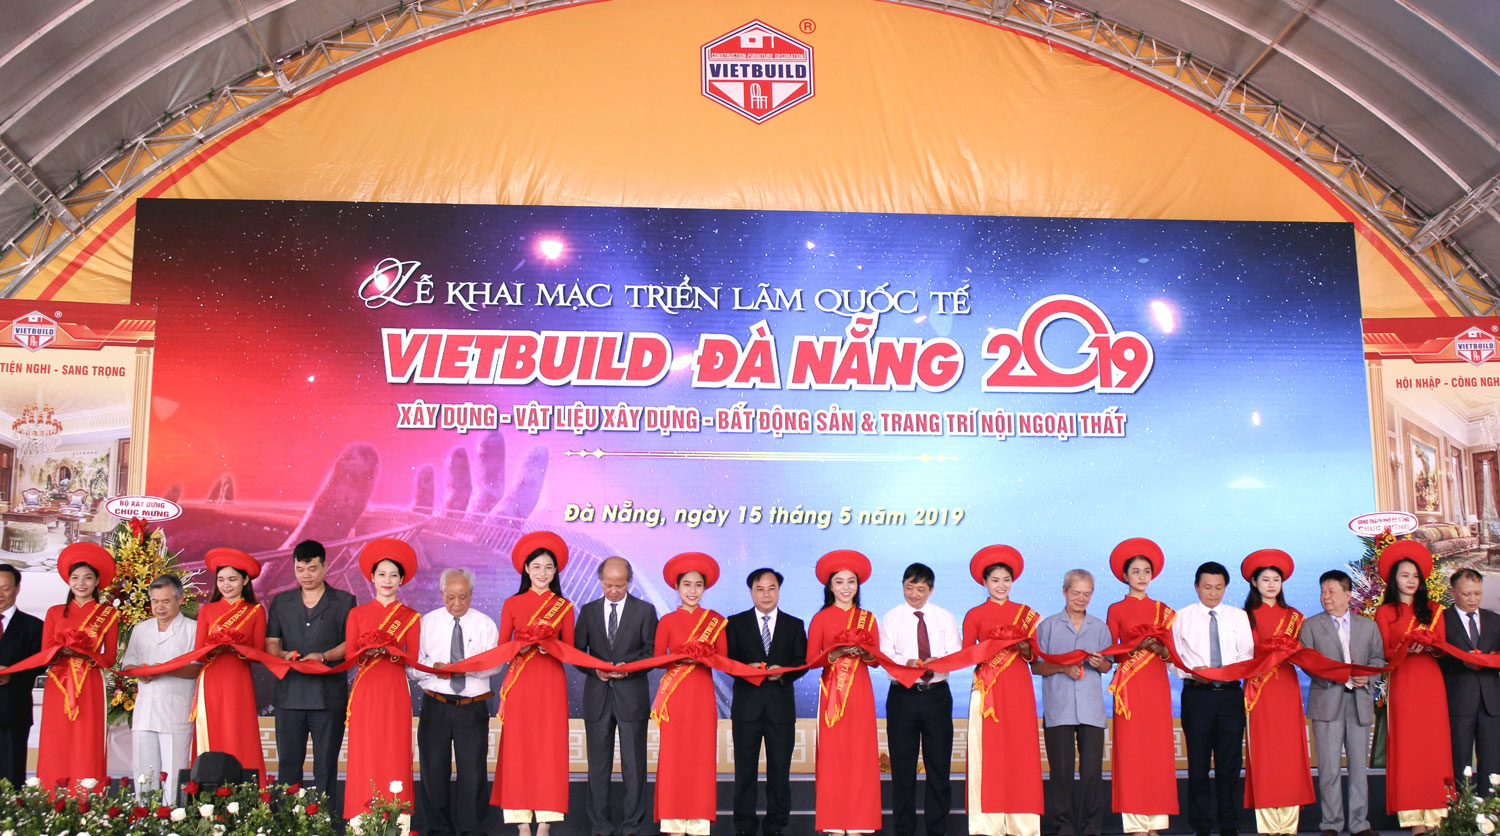 Triển lãm Quốc tế Vietbuild Đà Nẵng năm 2019.